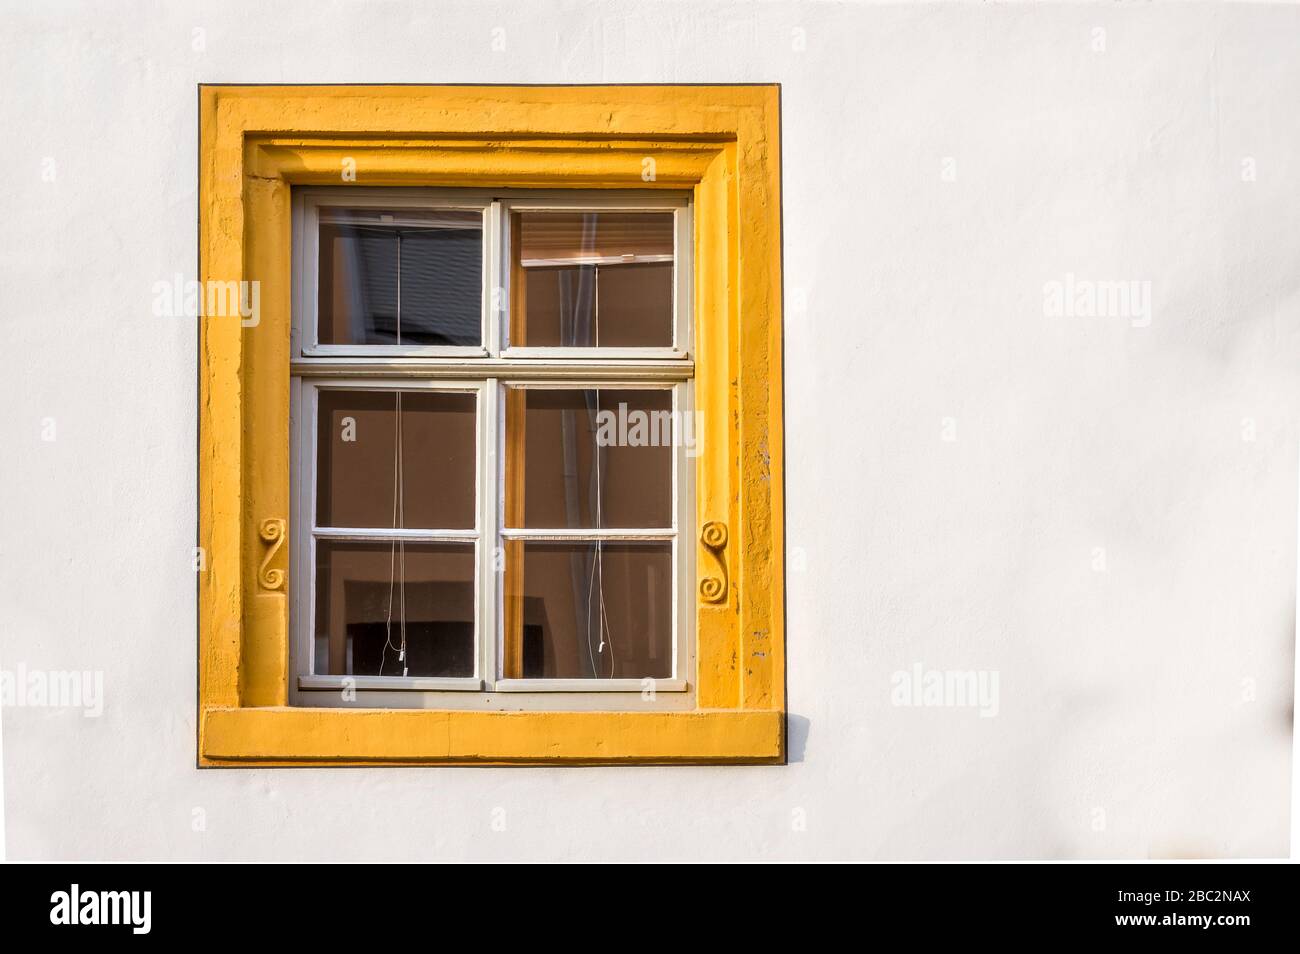 Fenêtre d'une maison restaurée à colombages partiellement plâtrée avec cadre en grès, décorée de couleur jaune Banque D'Images